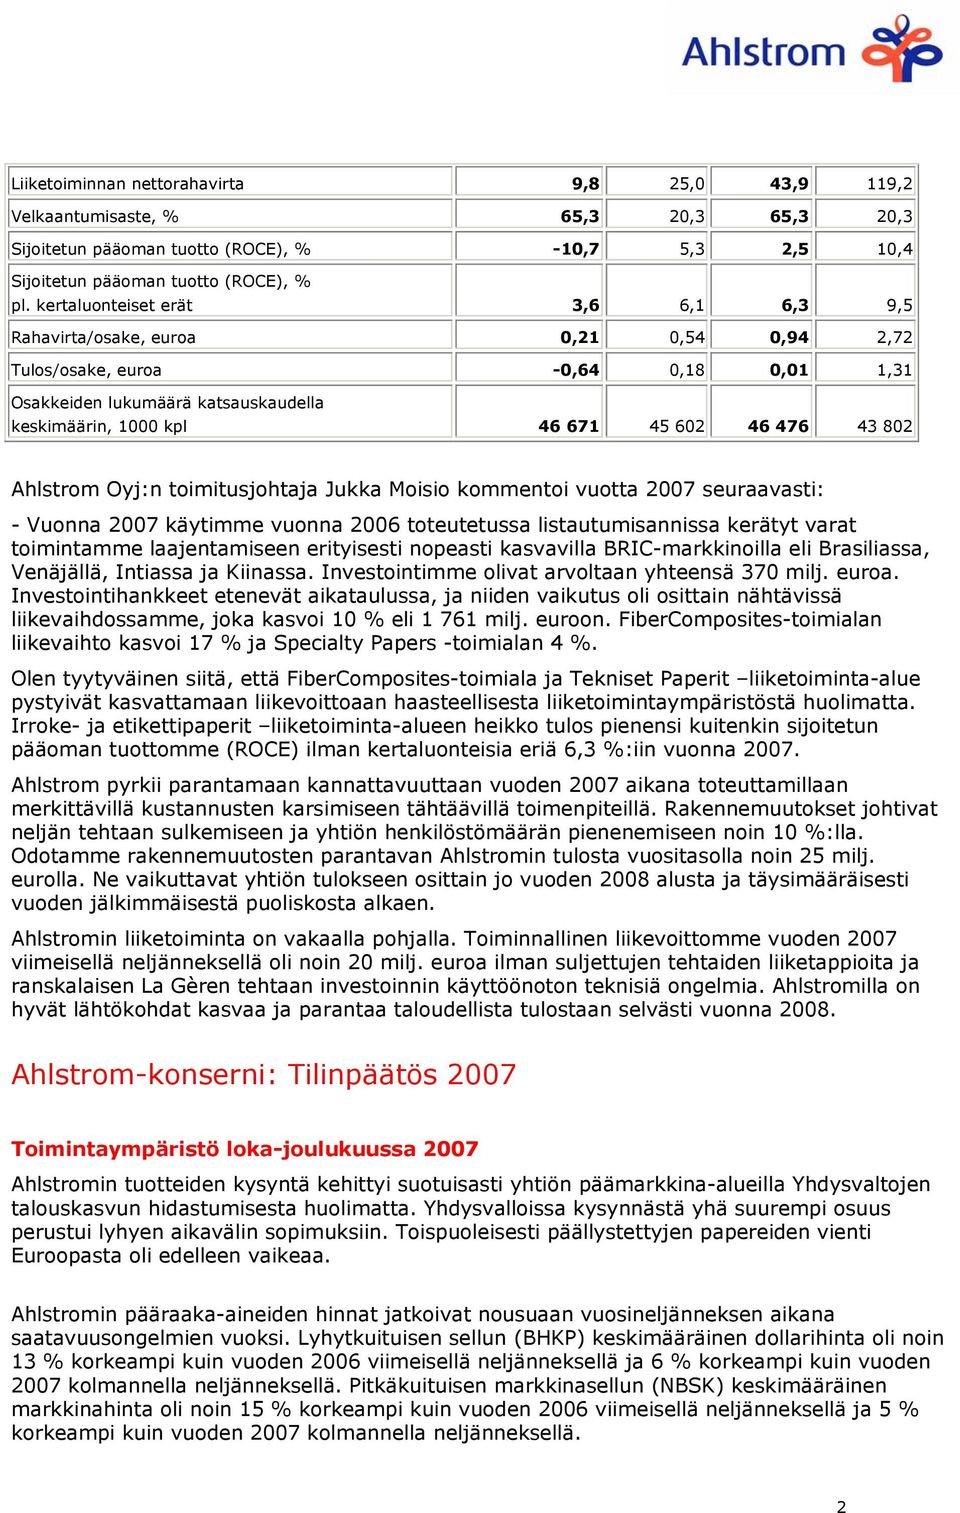 43 802 Ahlstrom Oyj:n toimitusjohtaja Jukka Moisio kommentoi vuotta 2007 seuraavasti: - Vuonna 2007 käytimme vuonna 2006 toteutetussa listautumisannissa kerätyt varat toimintamme laajentamiseen